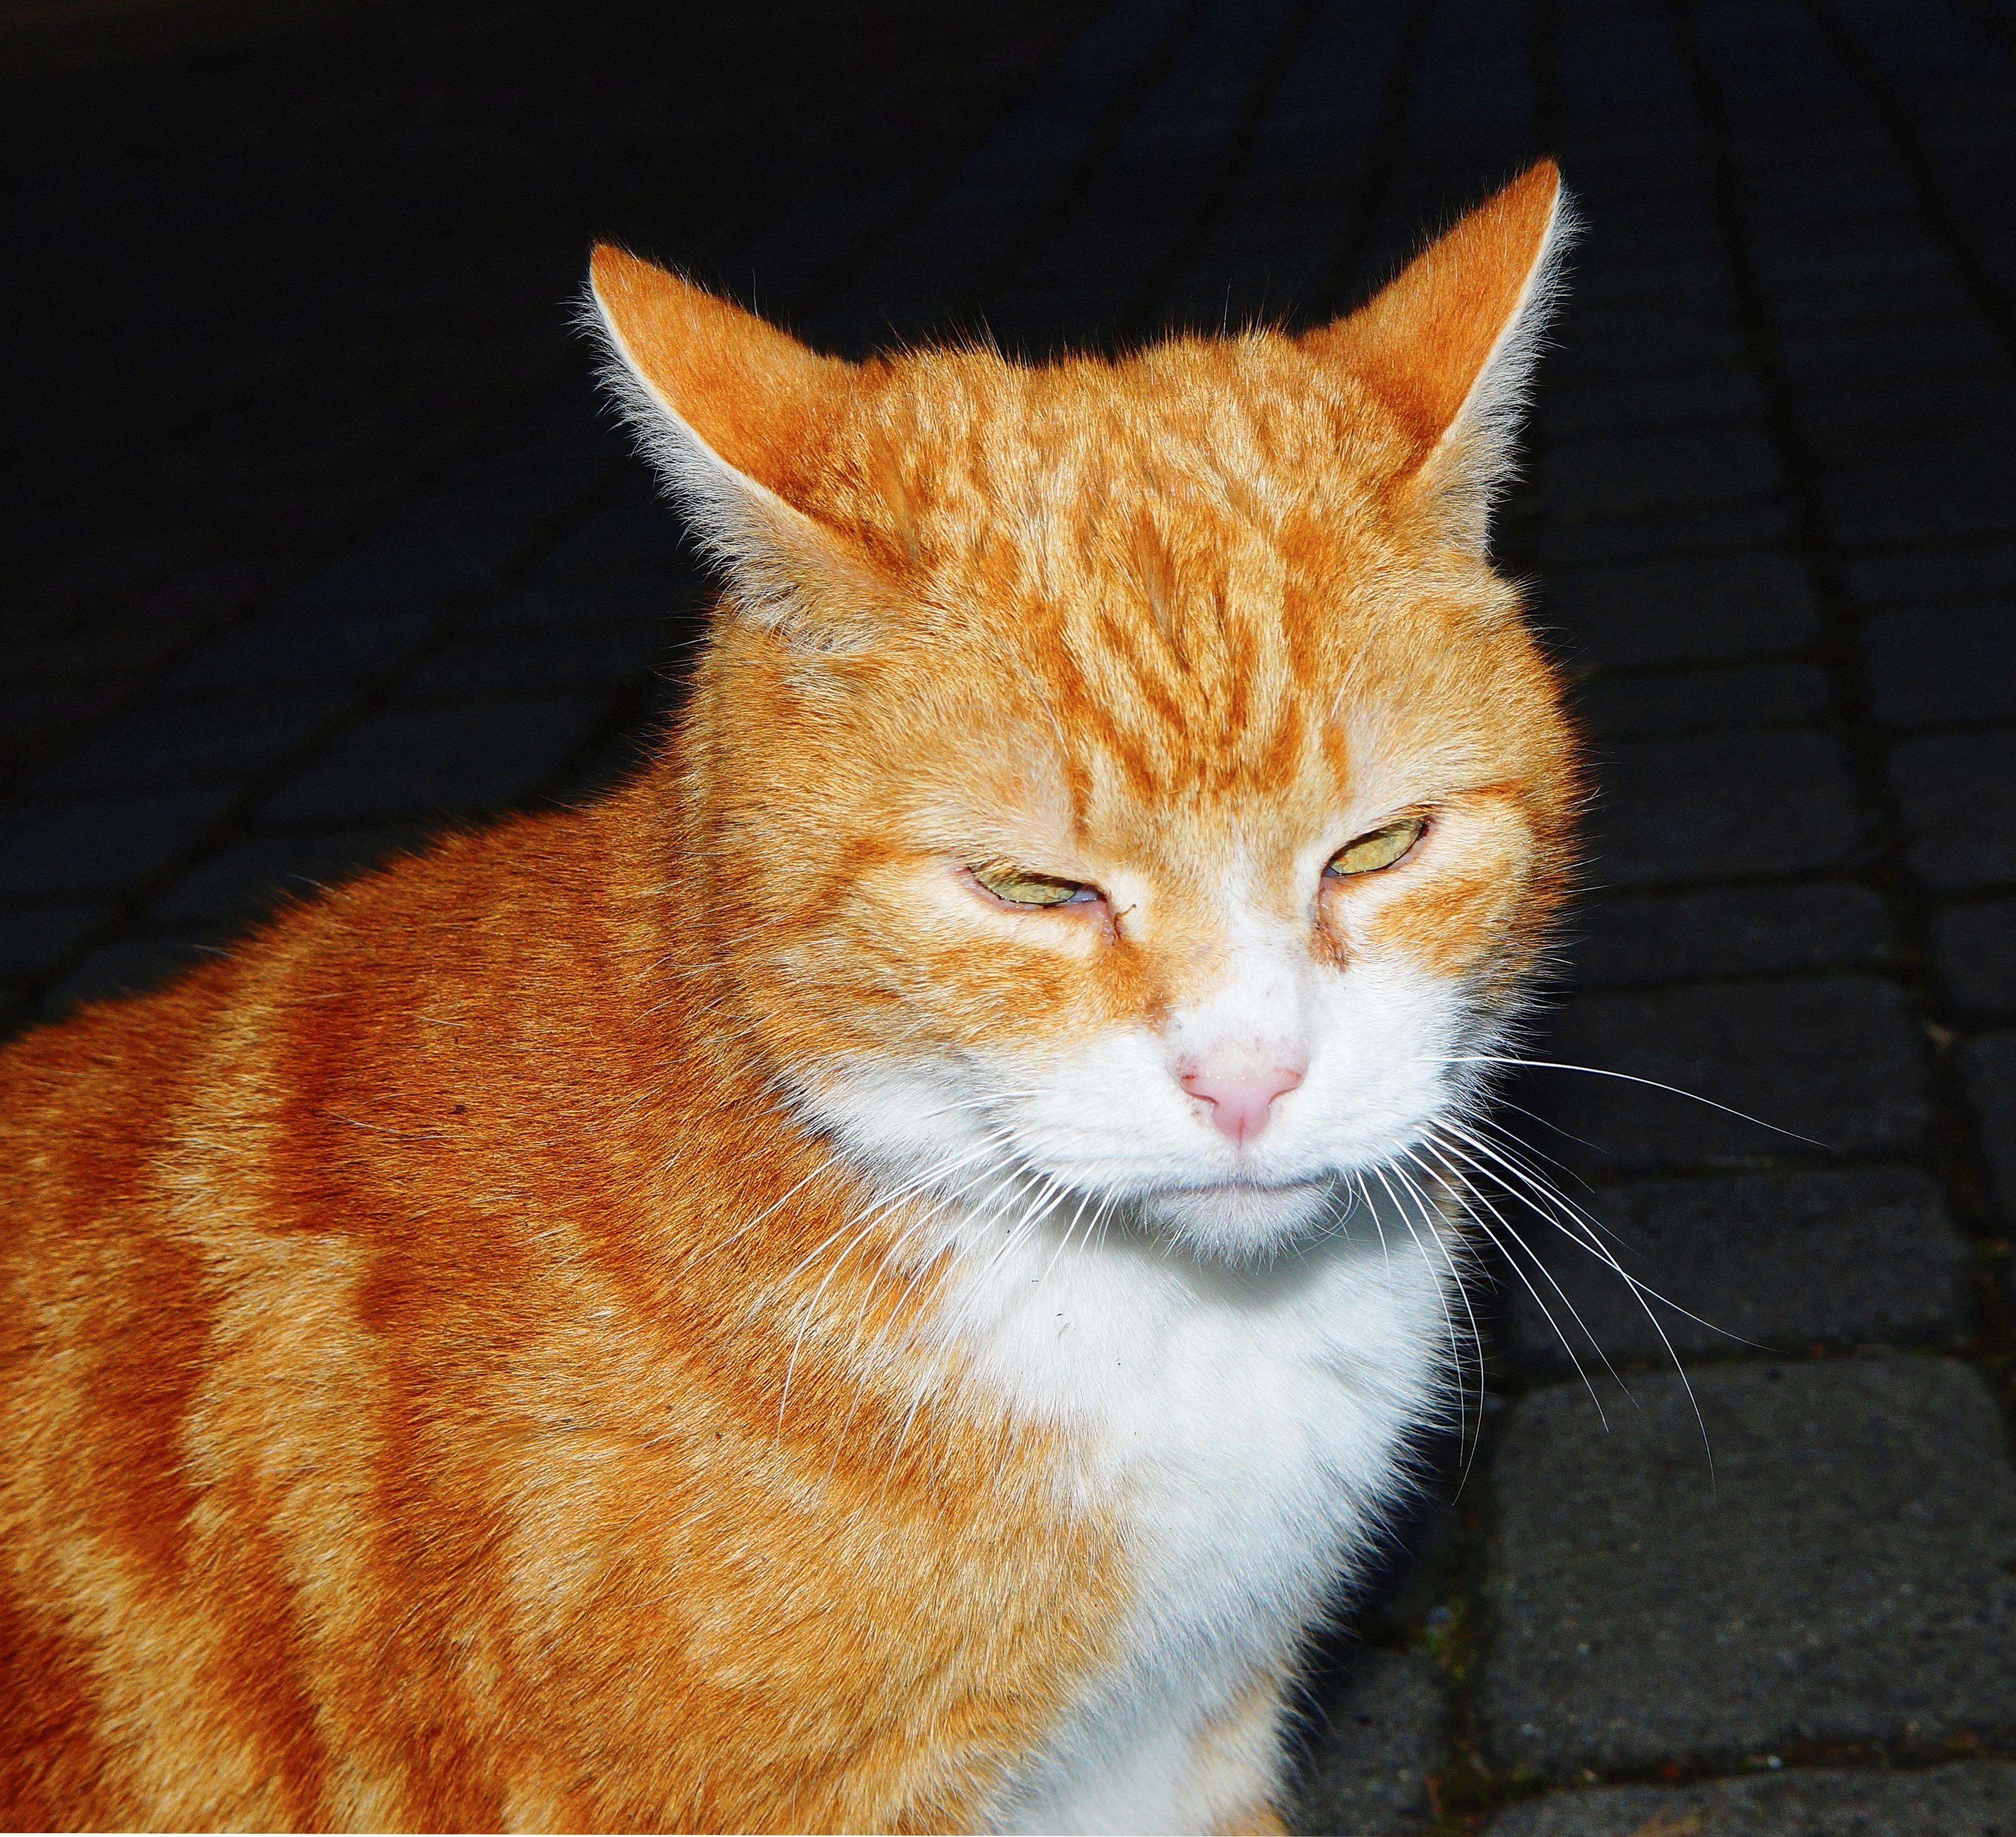 Рыжая полосатая кошка. Европейская короткошерстная табби рыжий. Европейский короткошерстный Крысолов рыжий. Европейская короткошерстная кошка рыжая. Анатолийская короткошерстная кошка рыжая.